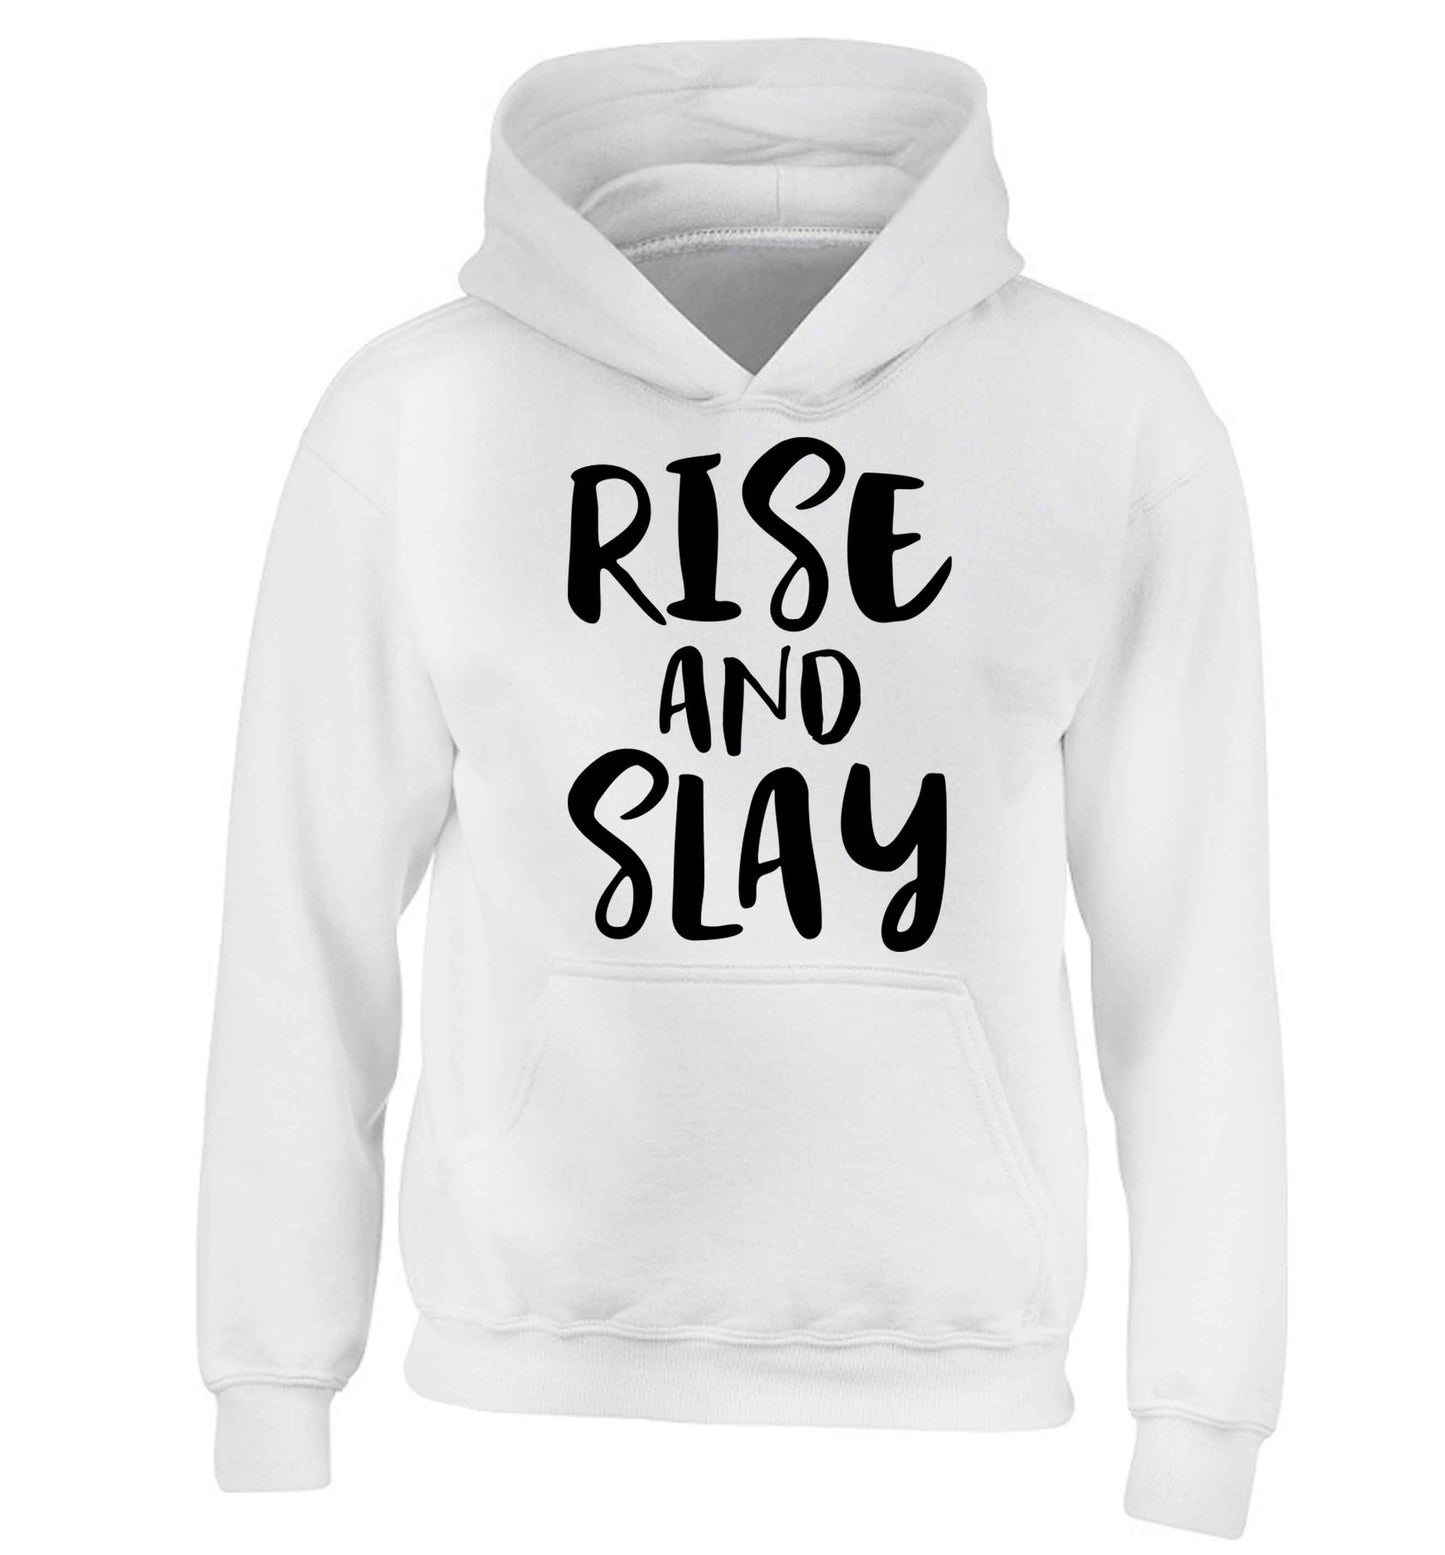 Rise and slay children's white hoodie 12-13 Years